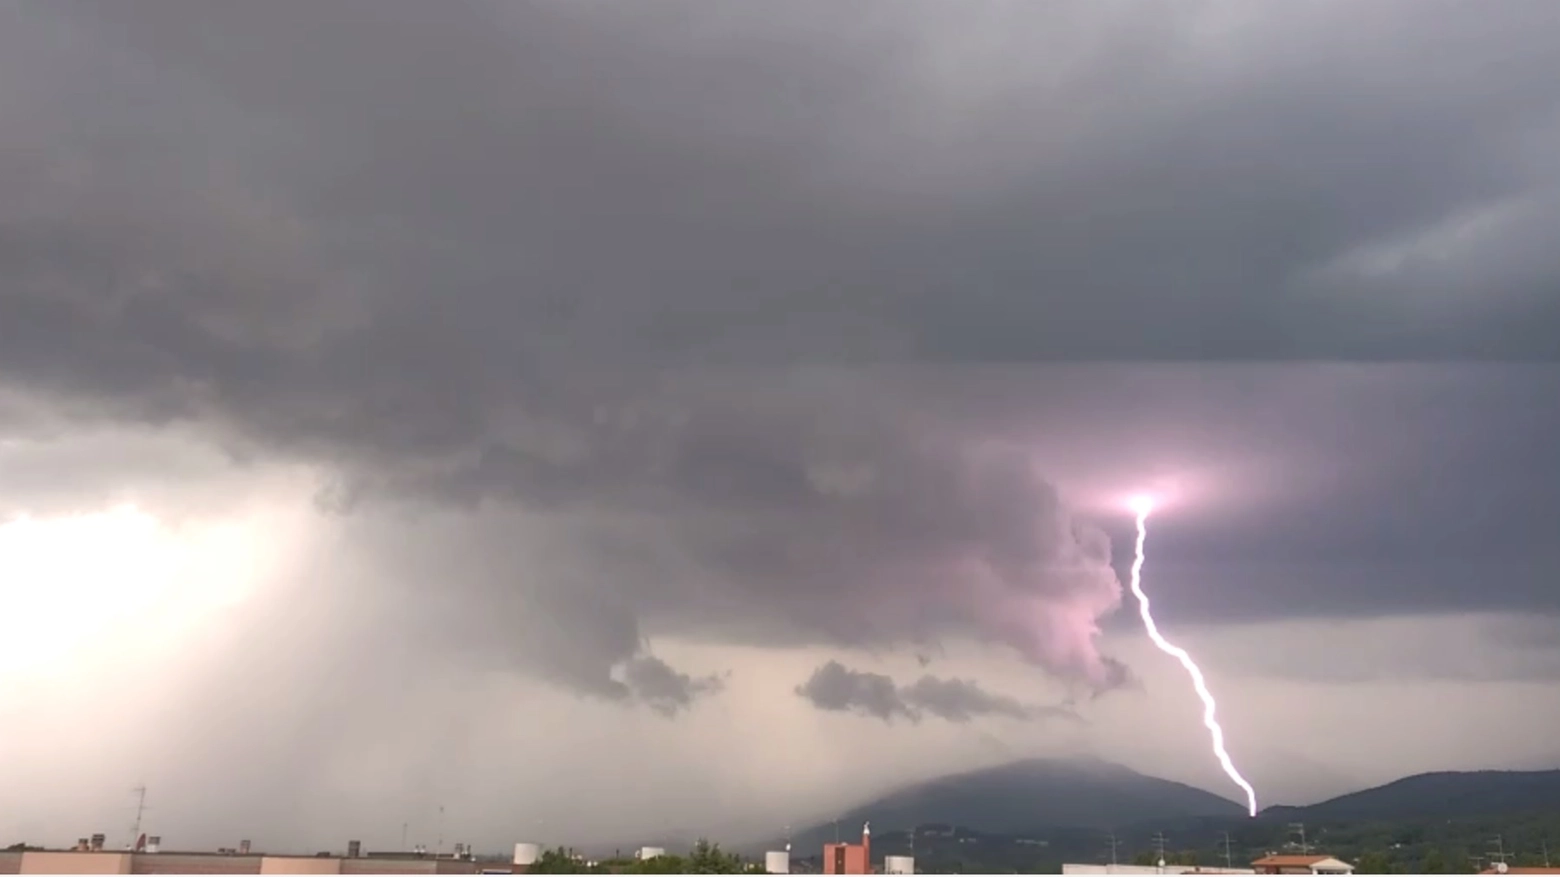 31 agosto, il temporale arriva sopra Prato. Immagine del video di Stefano Manera